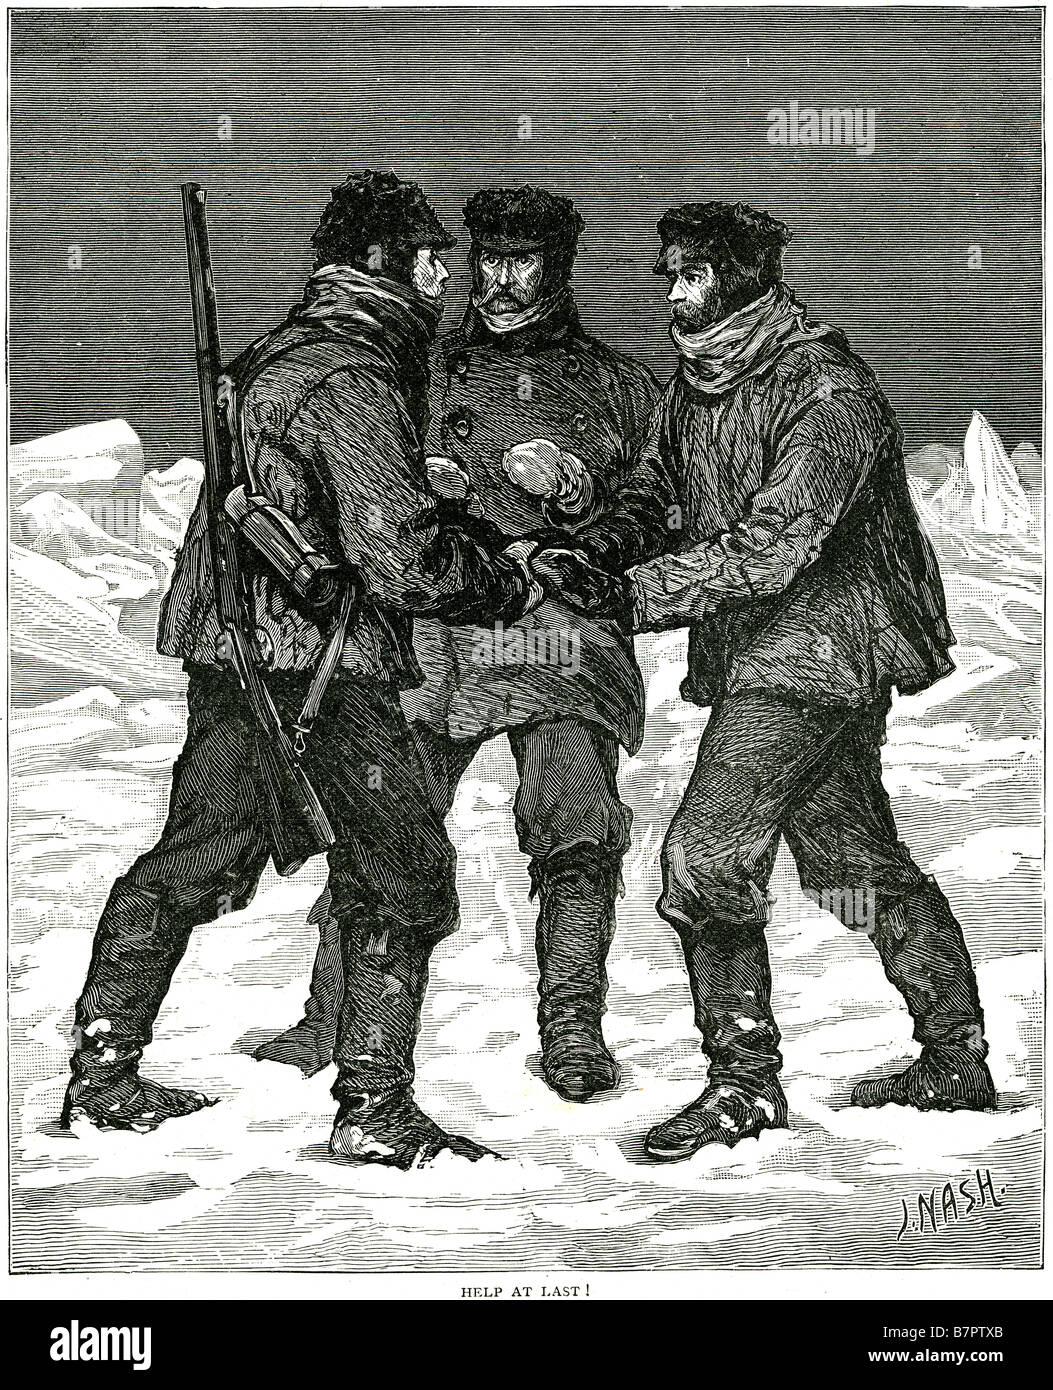 helfen Sie Männern Schnee Winter arktische Kälte Soldaten Explorer Menschen Abenteurer überleben Rettung Gewehr Kleidung traditionelle extreme Wea Eis Stockfoto